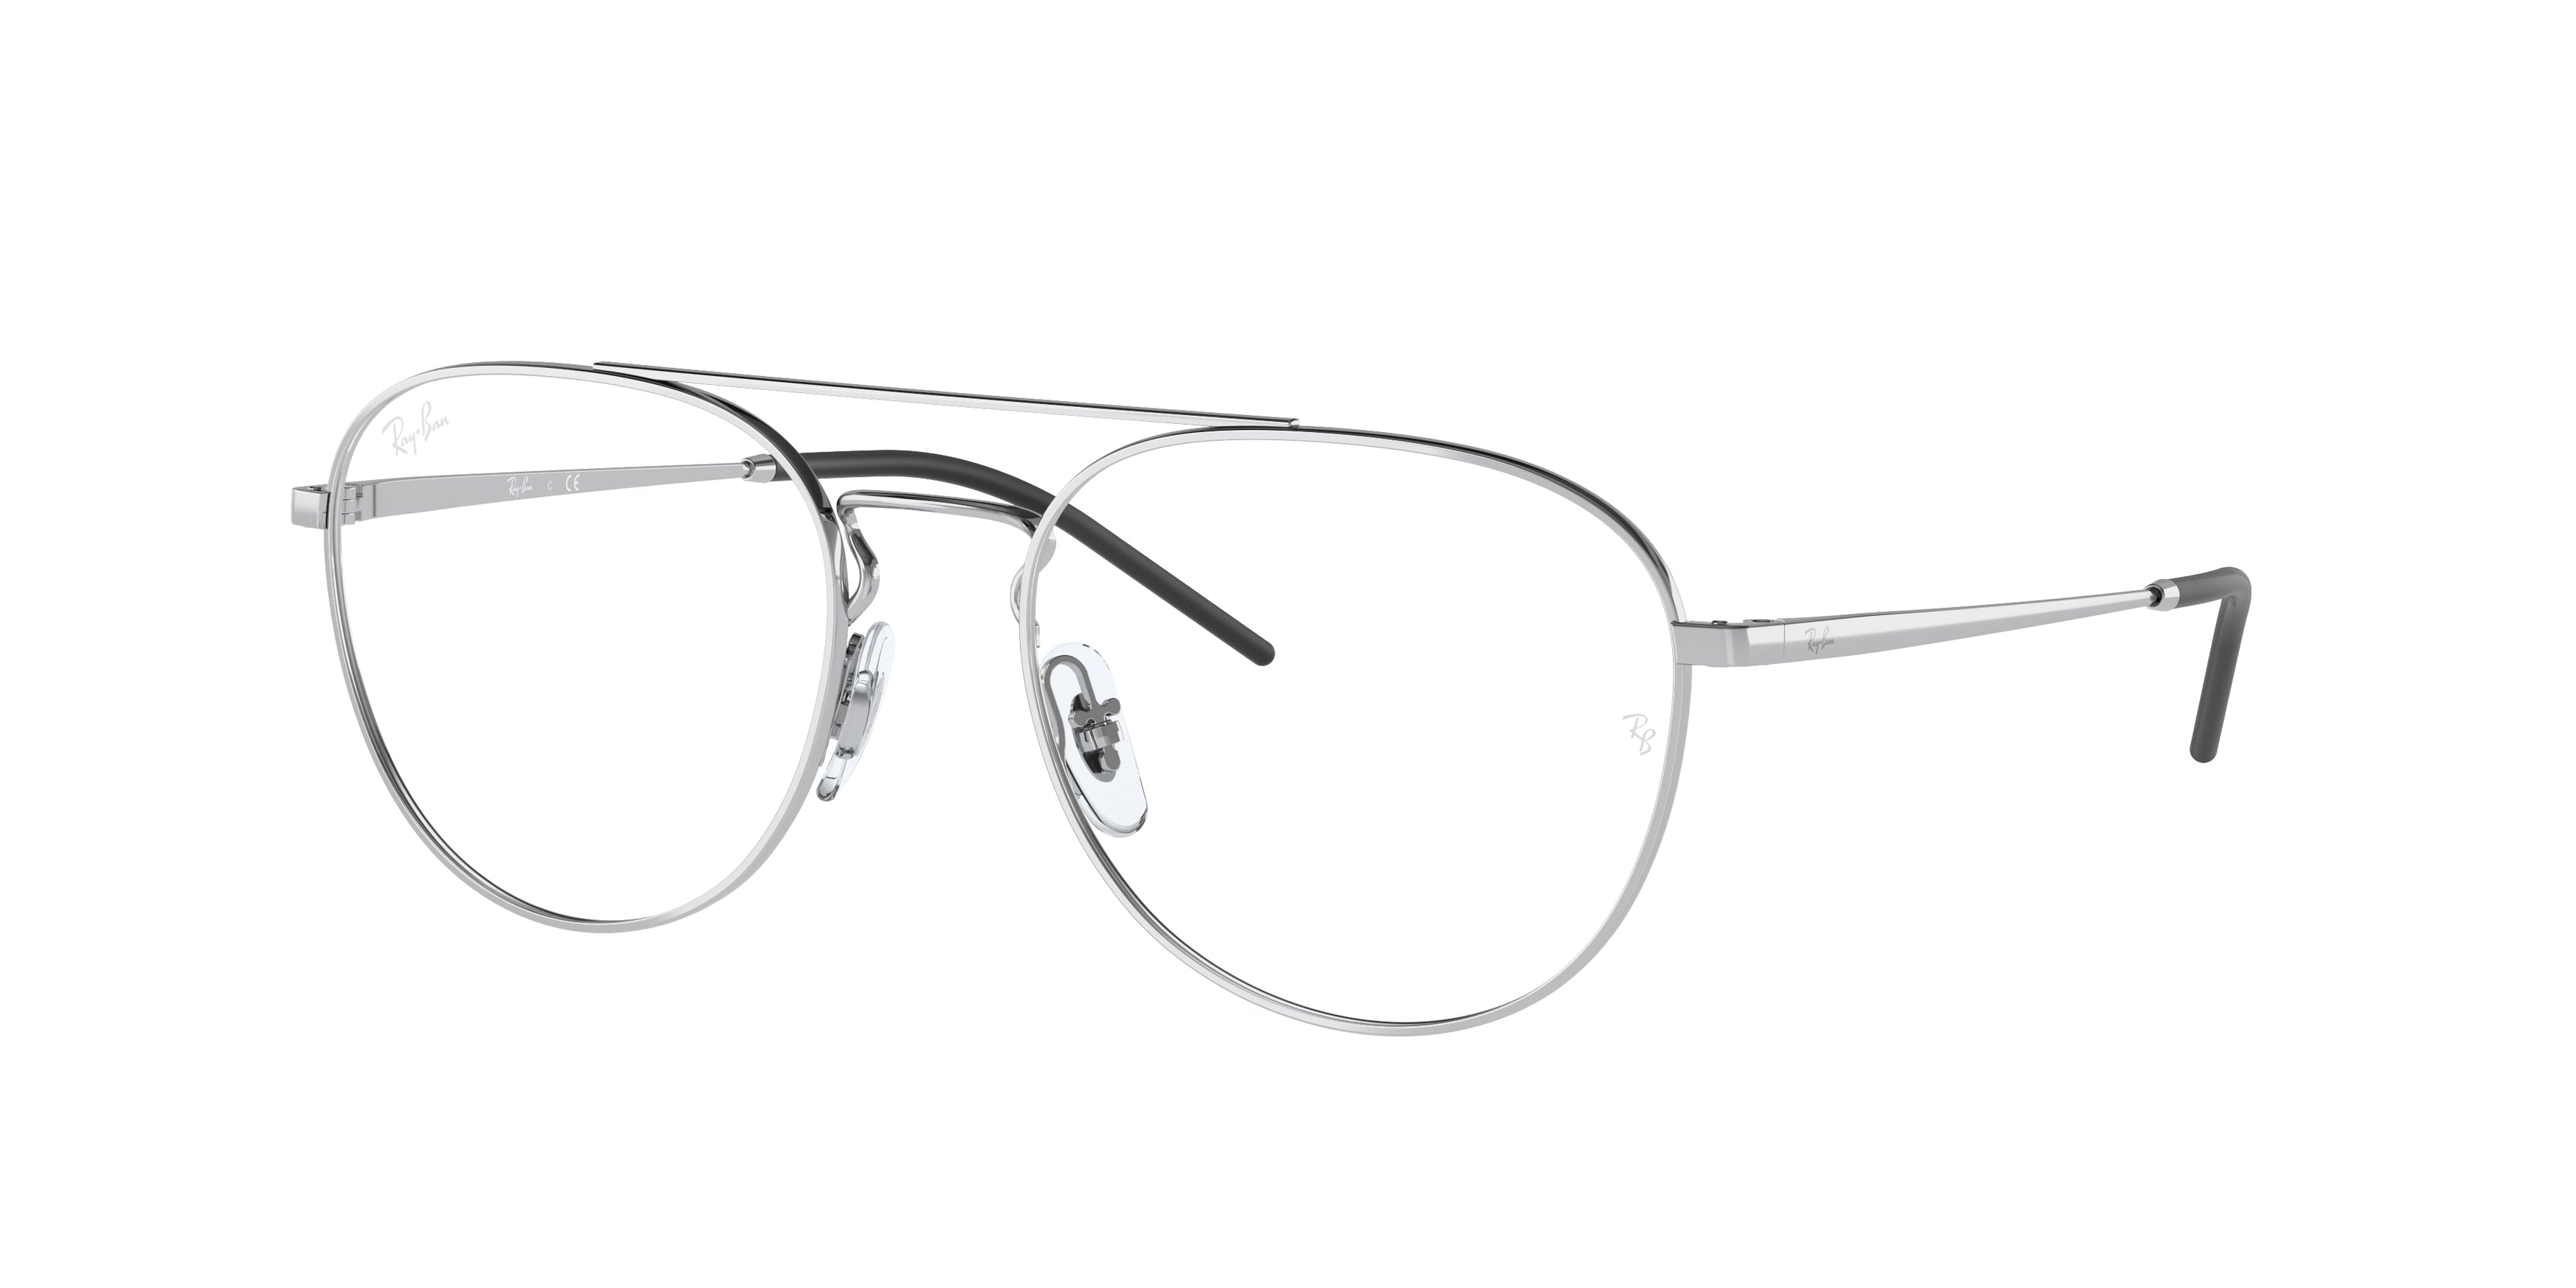 Ray-Ban Optical RX6414 Phantos Eyeglasses  2501-Silver 55-140-18 - Color Map Silver